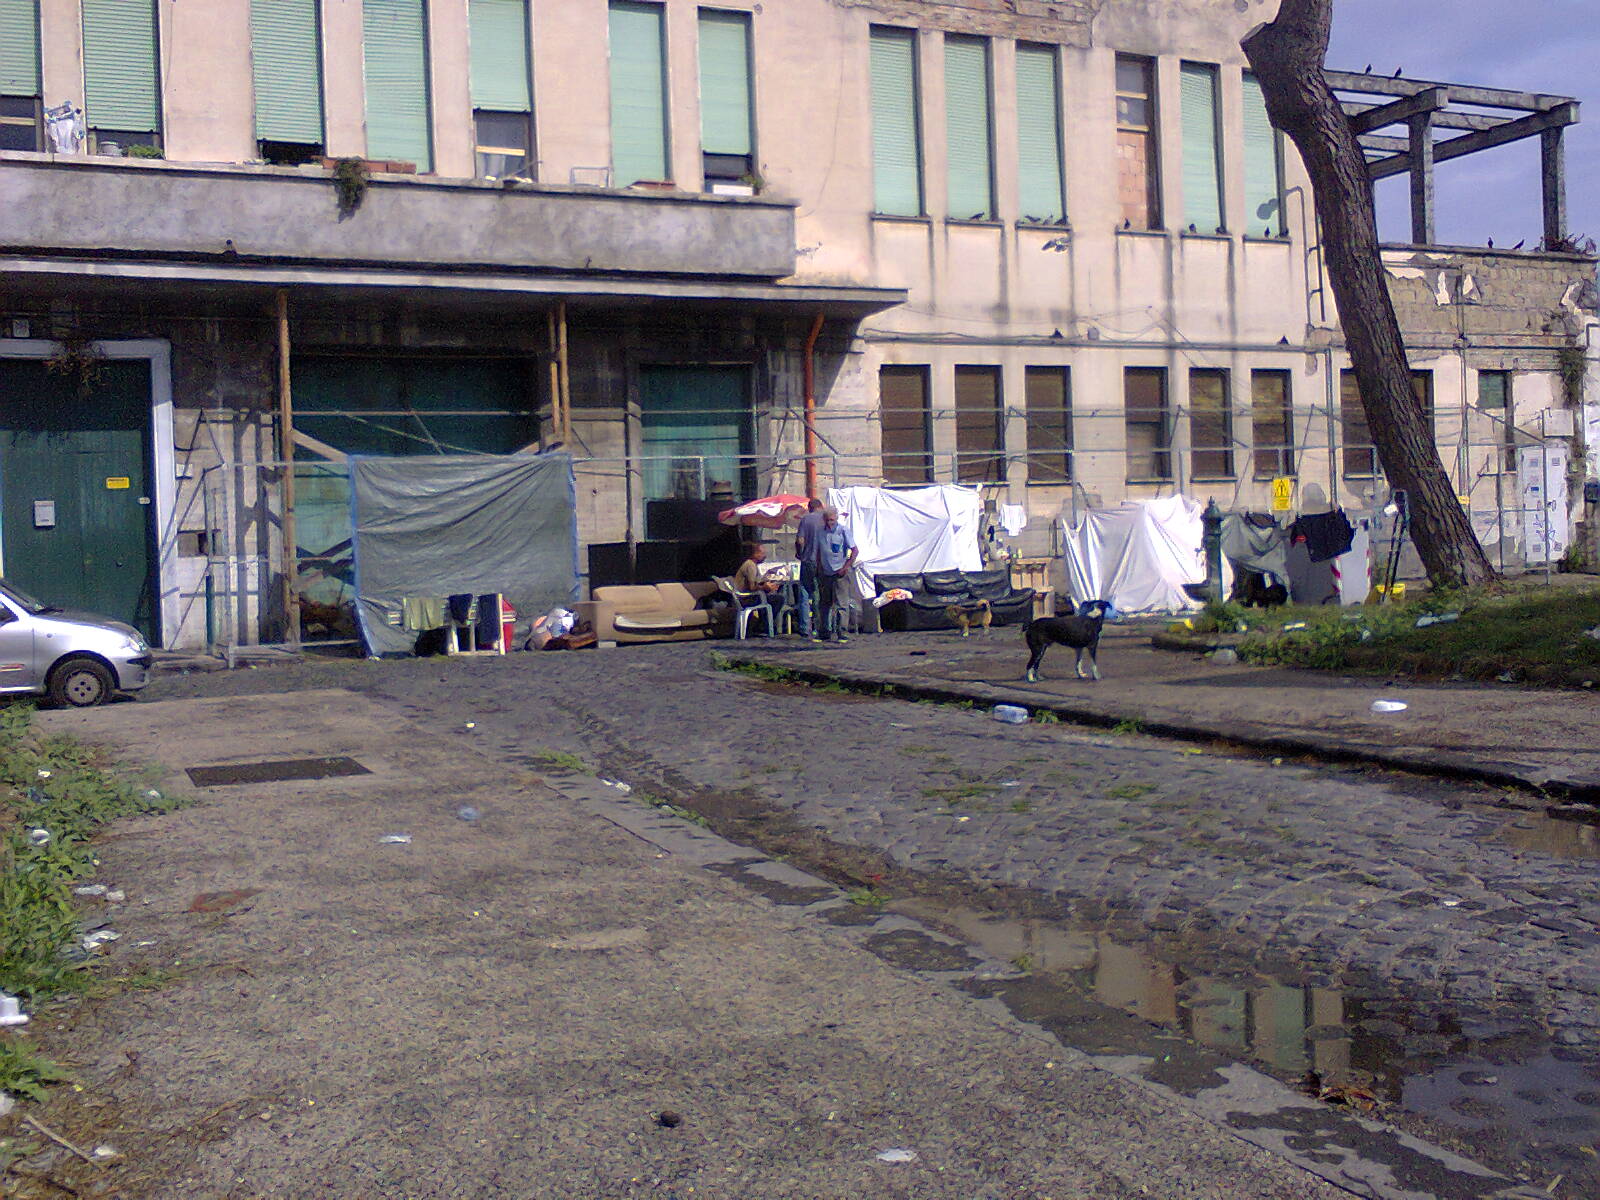  IV Municipalità, Succoio: “è emergenza degrado, sporcizia e senza-tetto”